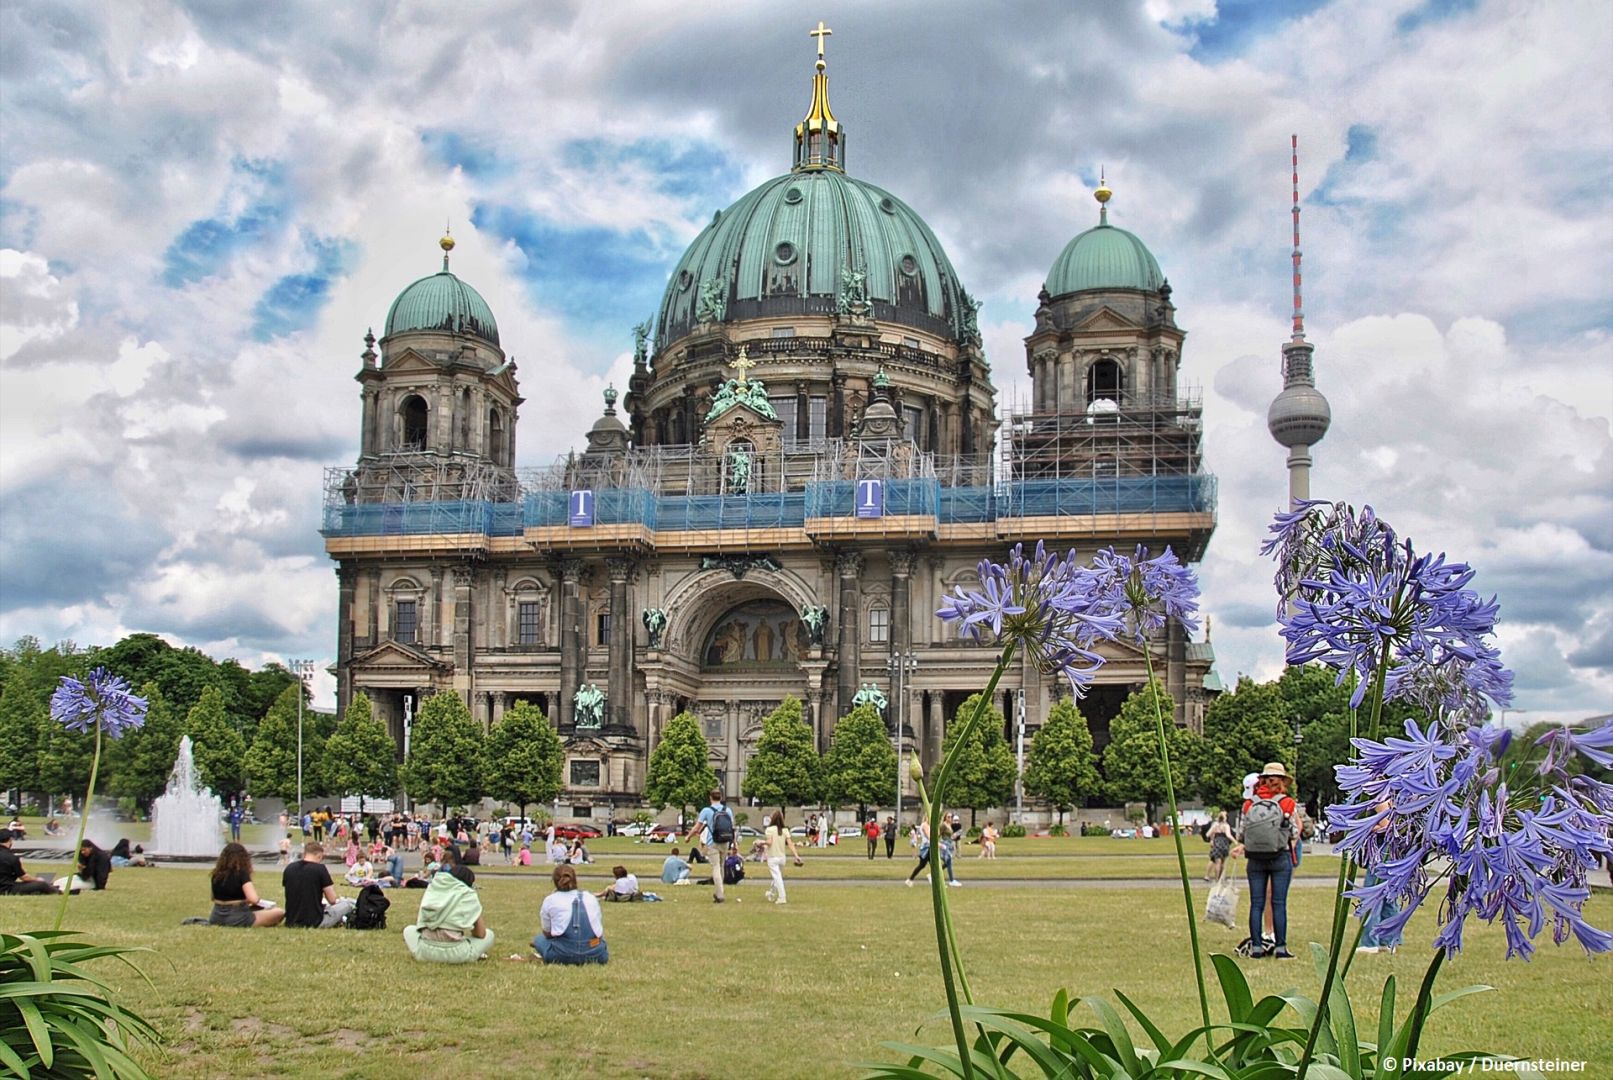 Deutschland hebt Covid-Beschränkungen für Touristen auf